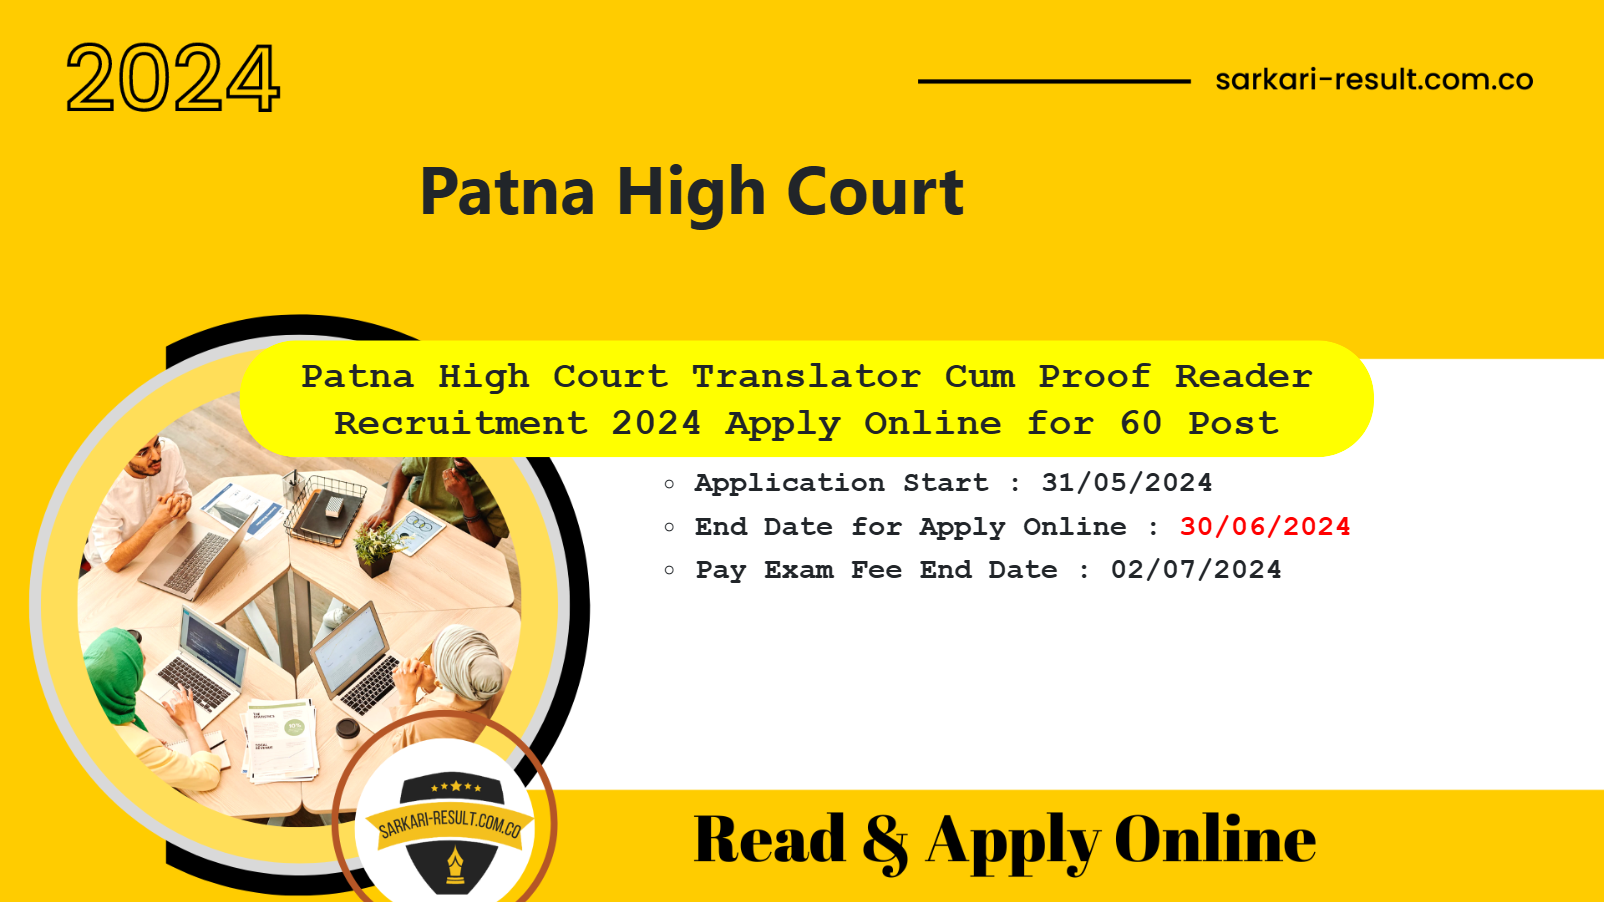 Patna High Court Translator Cum Proof Reader Online Form 2024